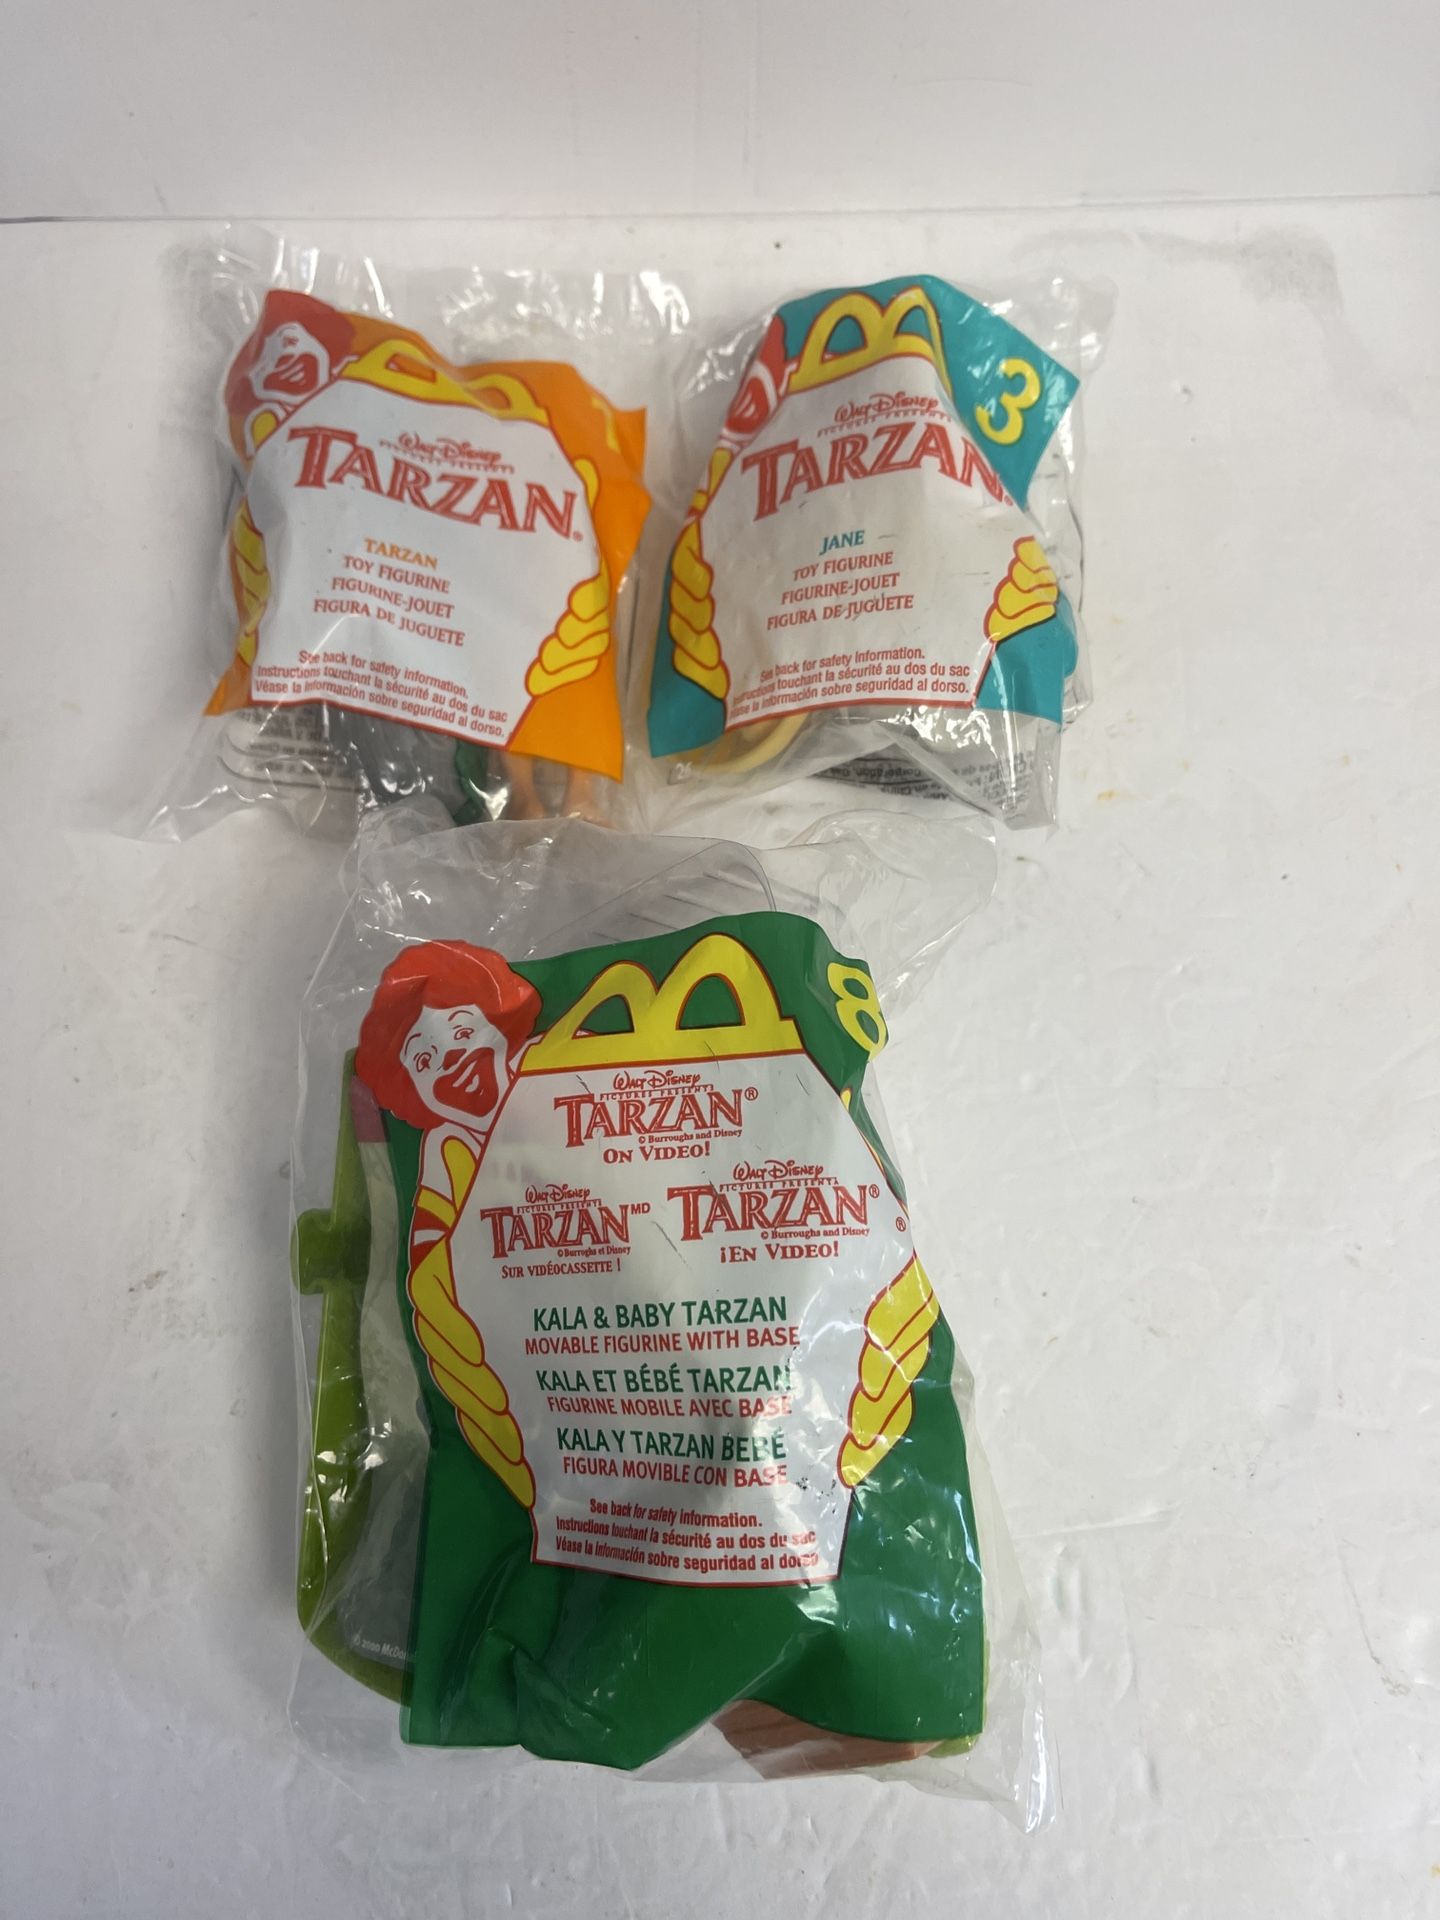  F208 - McDonalds Happy gMeal Toy 1999 Disney Tarzan #1 and Jane #3 & 2000 Tarzan.